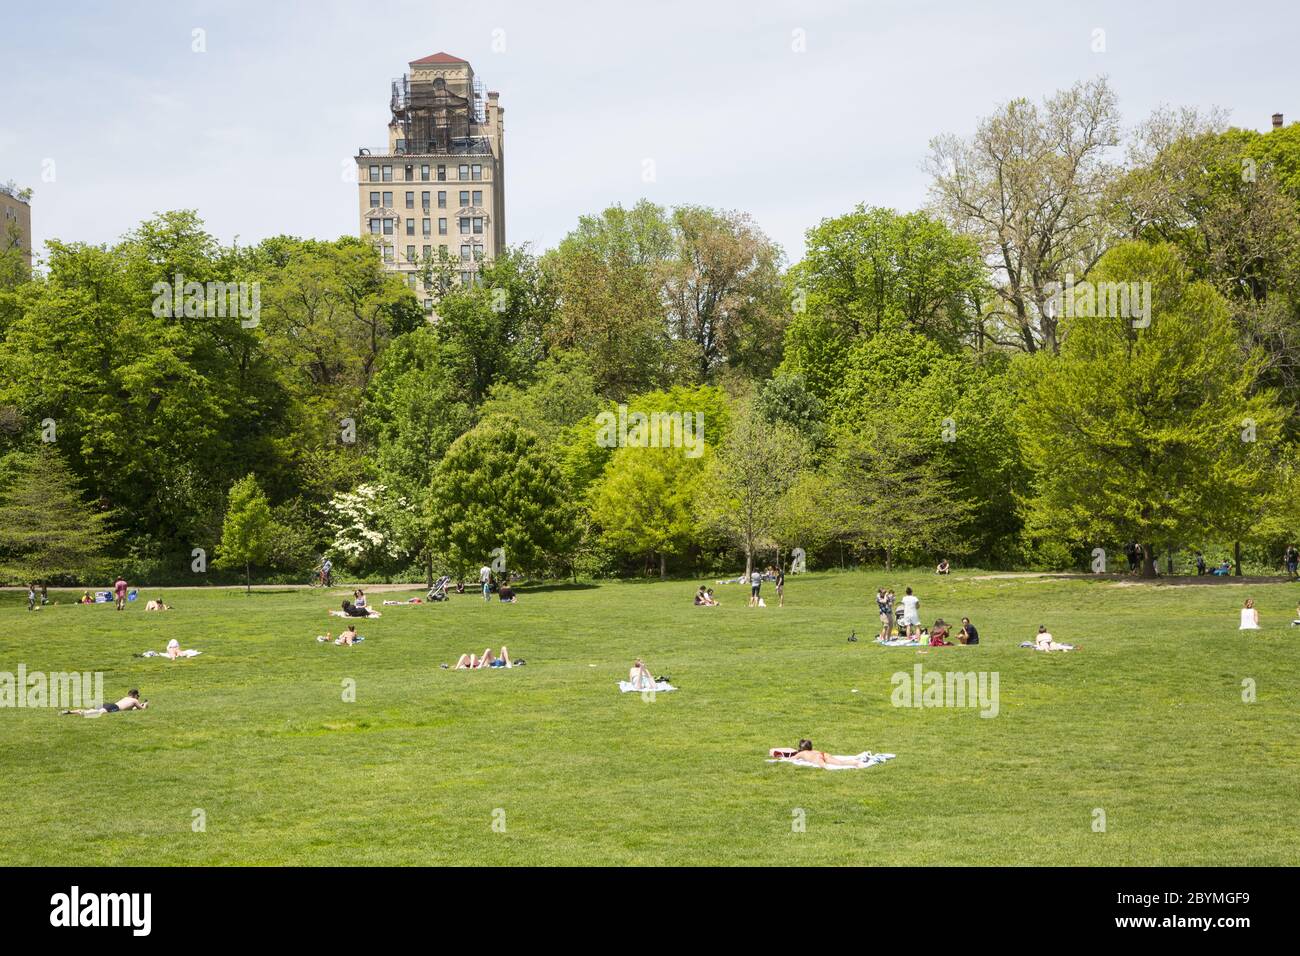 Die Menschen bekommen während der Coronavirus Covid-19 Pandemie etwas Sonne und Luft, während sie sich sozial distanzieren. Prospect Park, Brooklyn, New York. Stockfoto